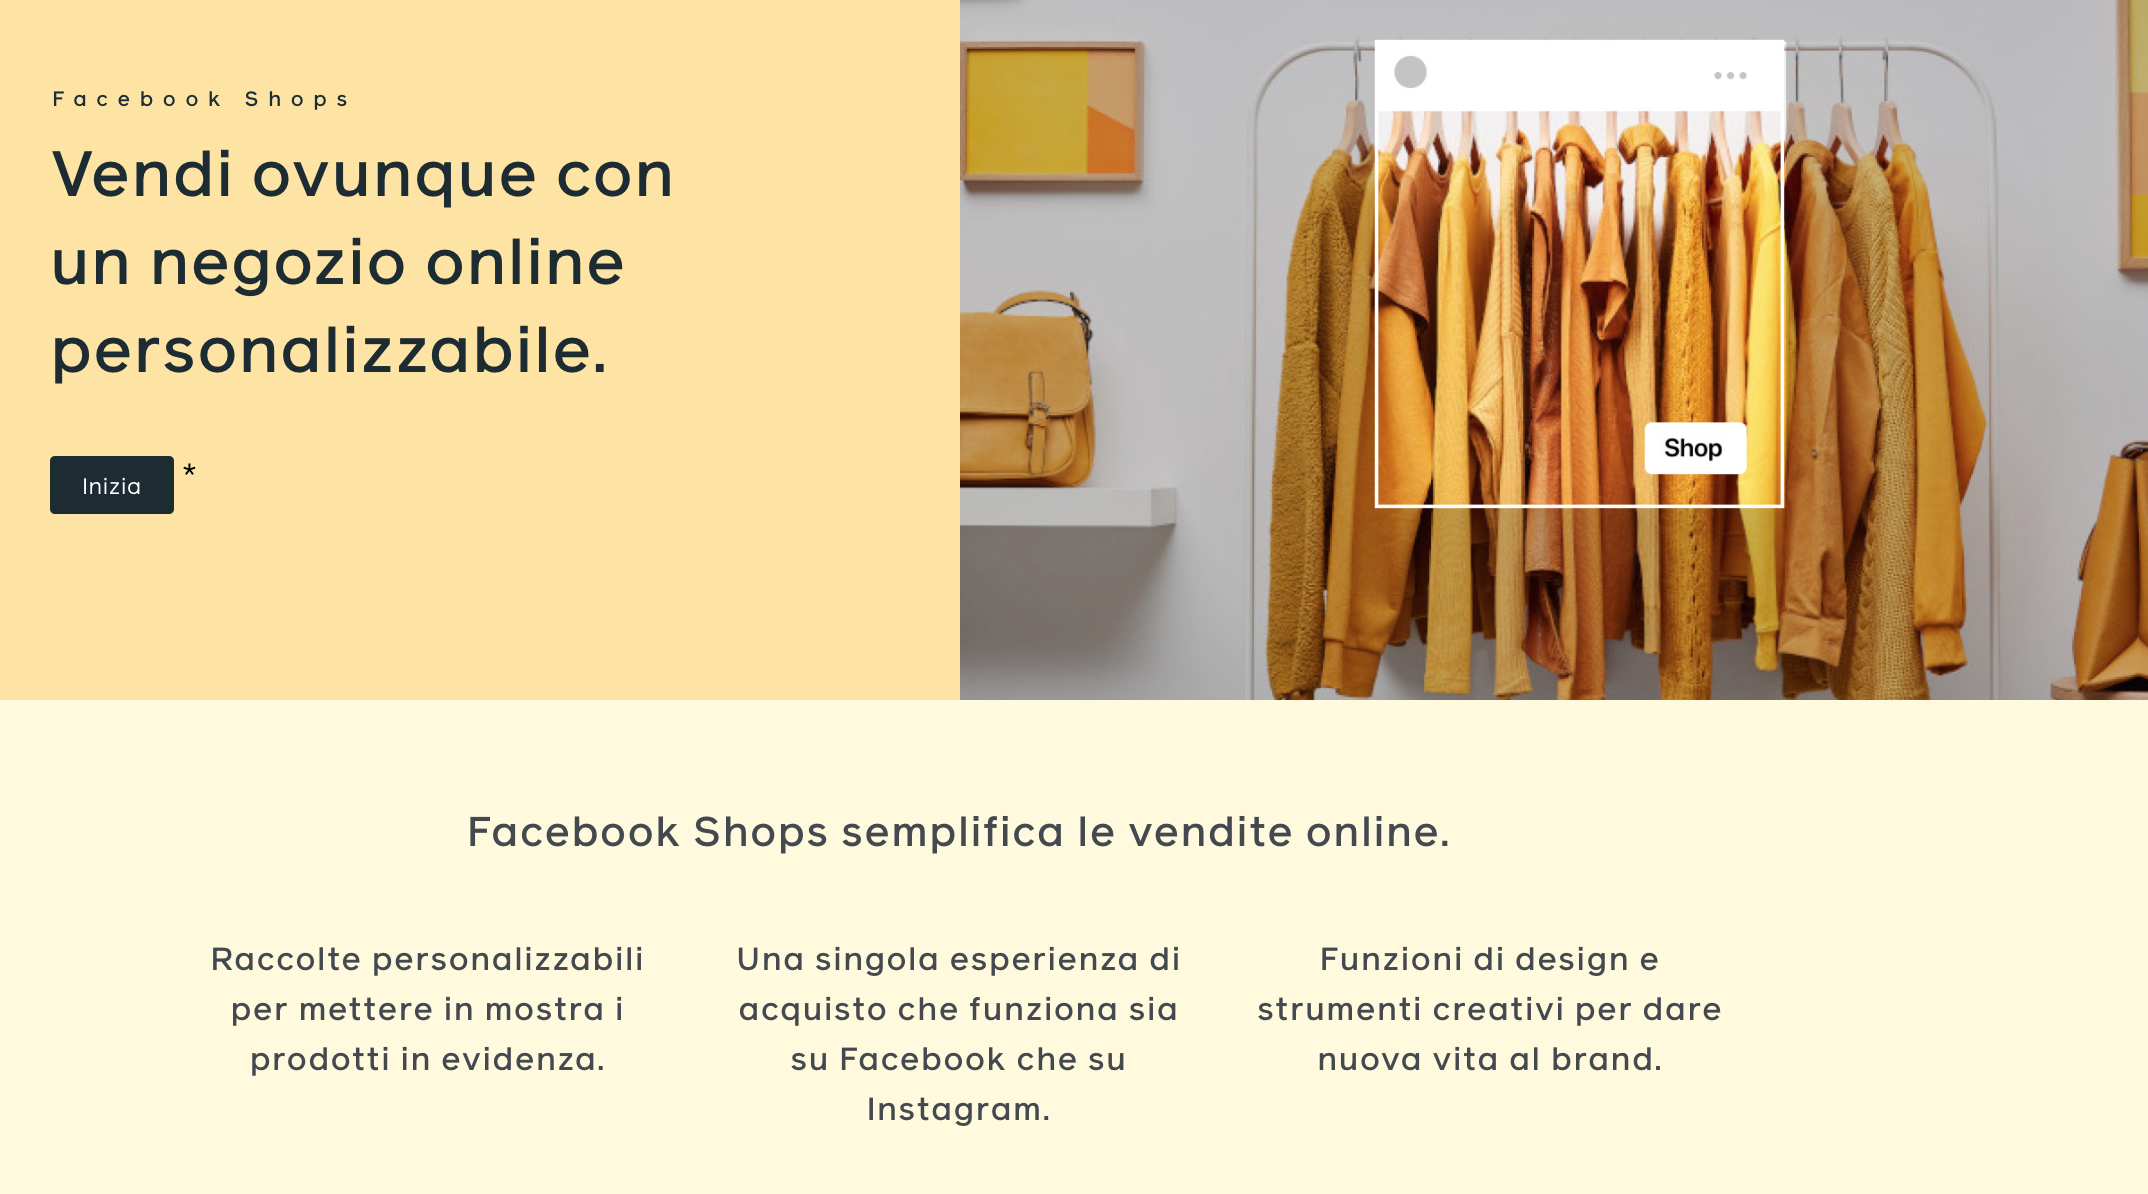 facebook shops in italia